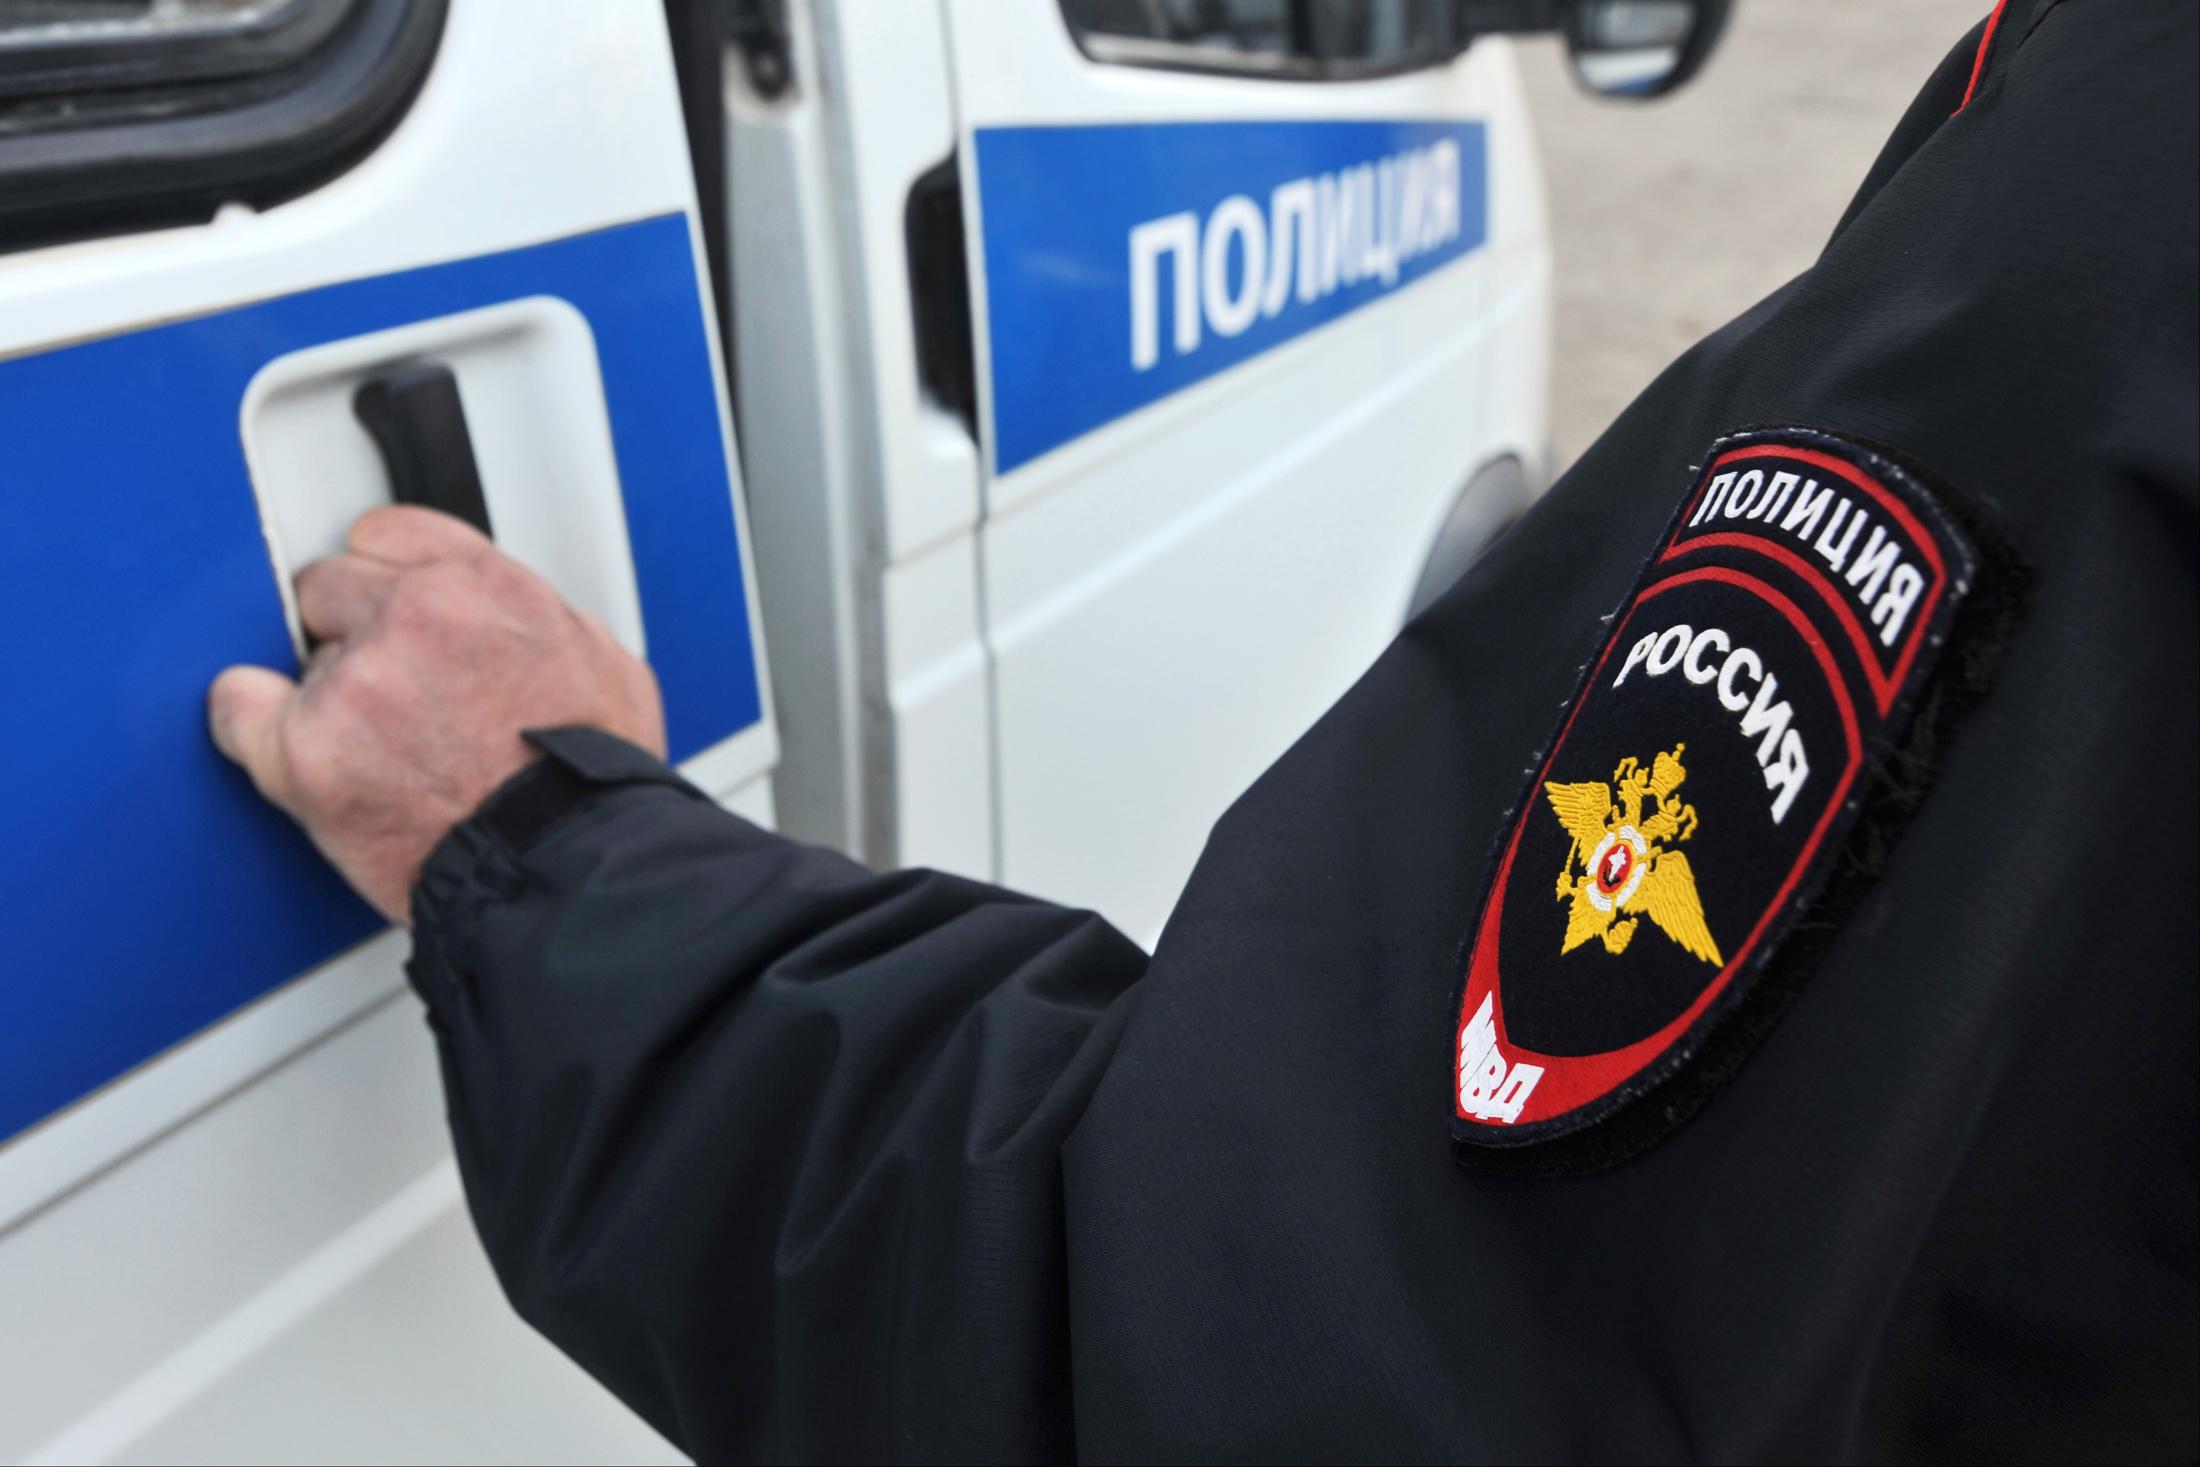 Личности мужчин, распыливших перцовый газ в лицо продавщицы, установили в Якутске